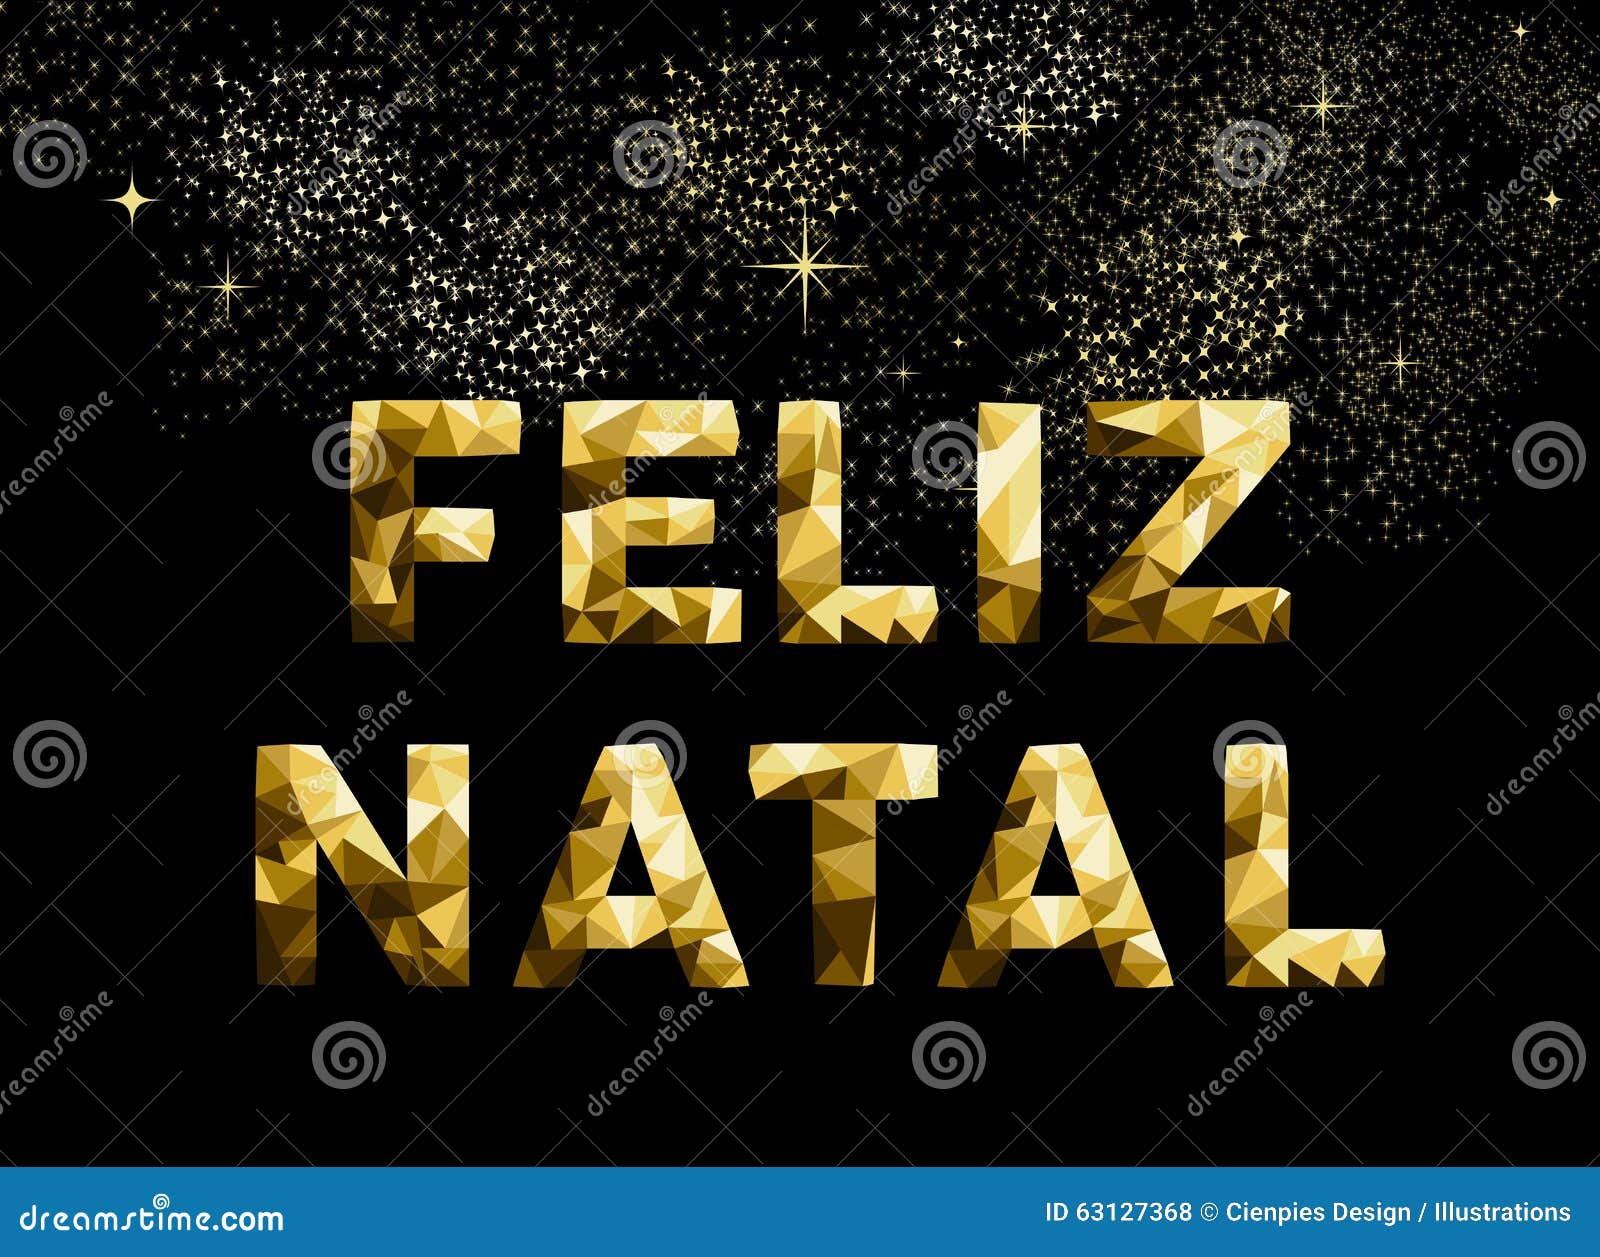 Buon Natale In Brasiliano.Oro Natale Del Brasile Del Feliz Di Buon Natale In Basso Poli Illustrazione Vettoriale Illustrazione Di Brazil Grafico 63127368